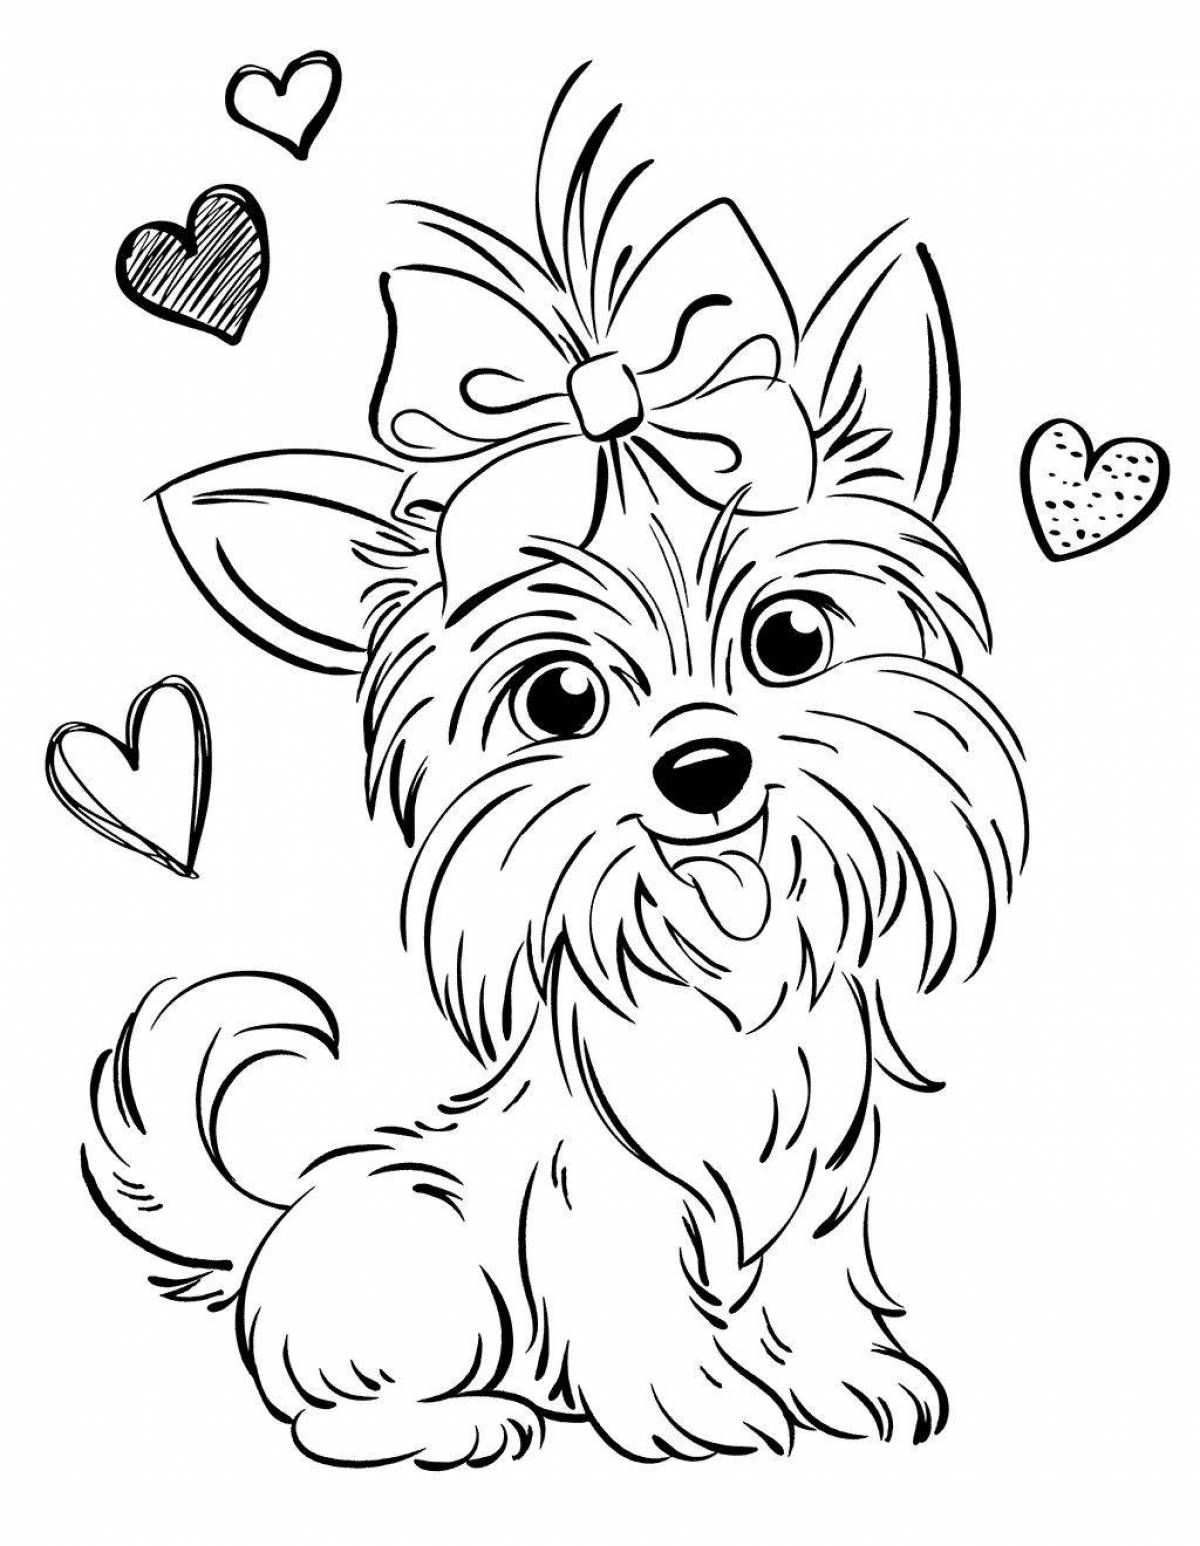 Дружелюбная раскраска собака с сердечком